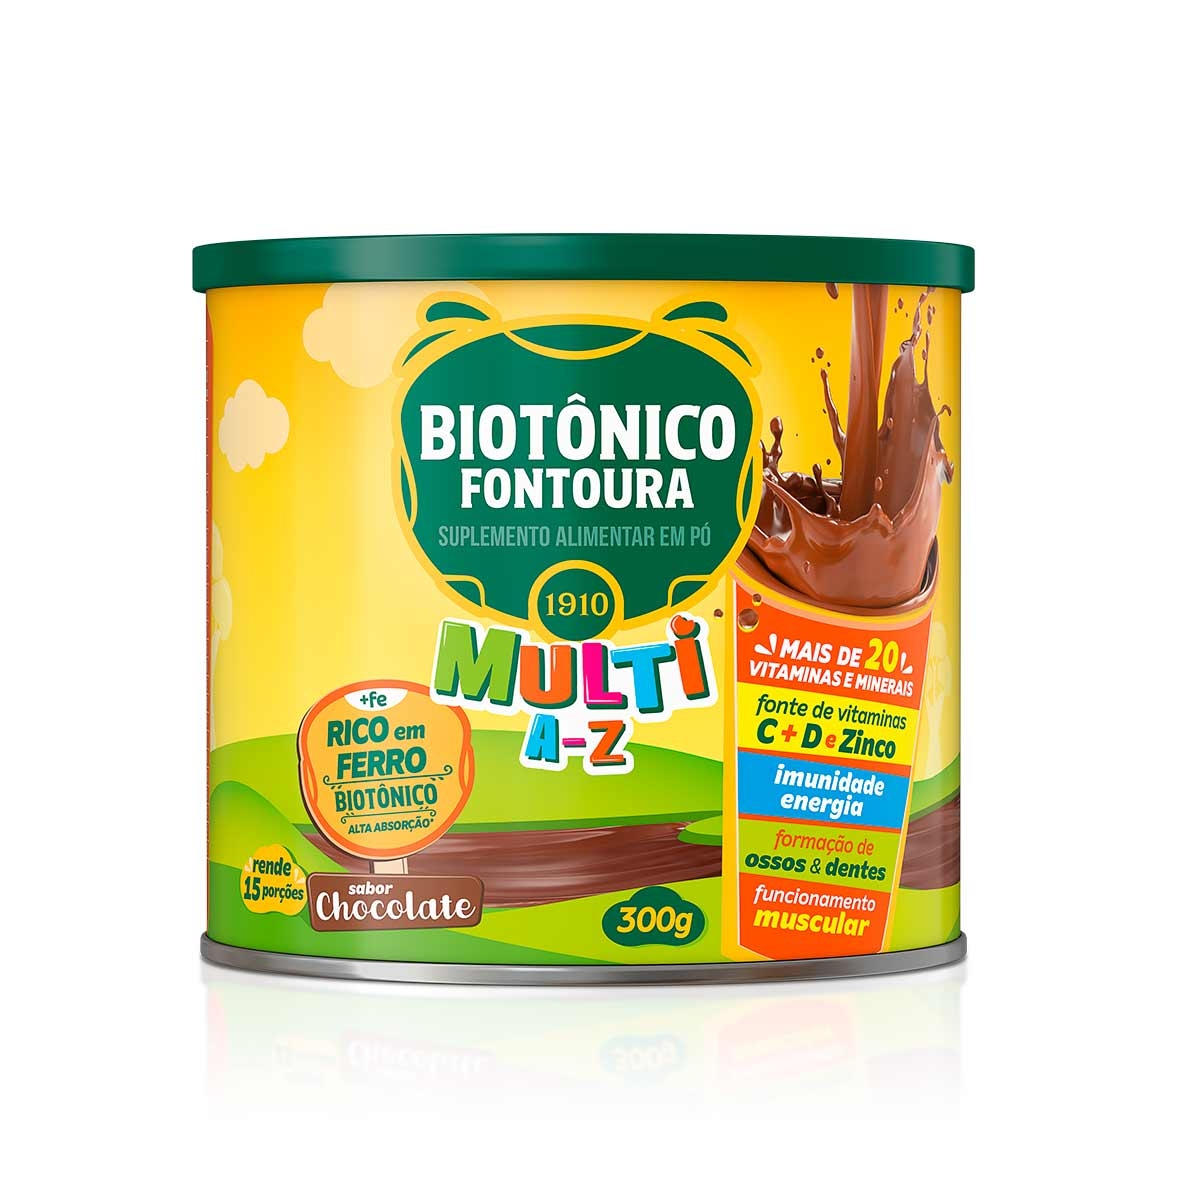 Suplemento Alimentar em Pó Biotônico Fontoura Multi A-Z Chocolate com 300g Biotonico Fontoura 300g